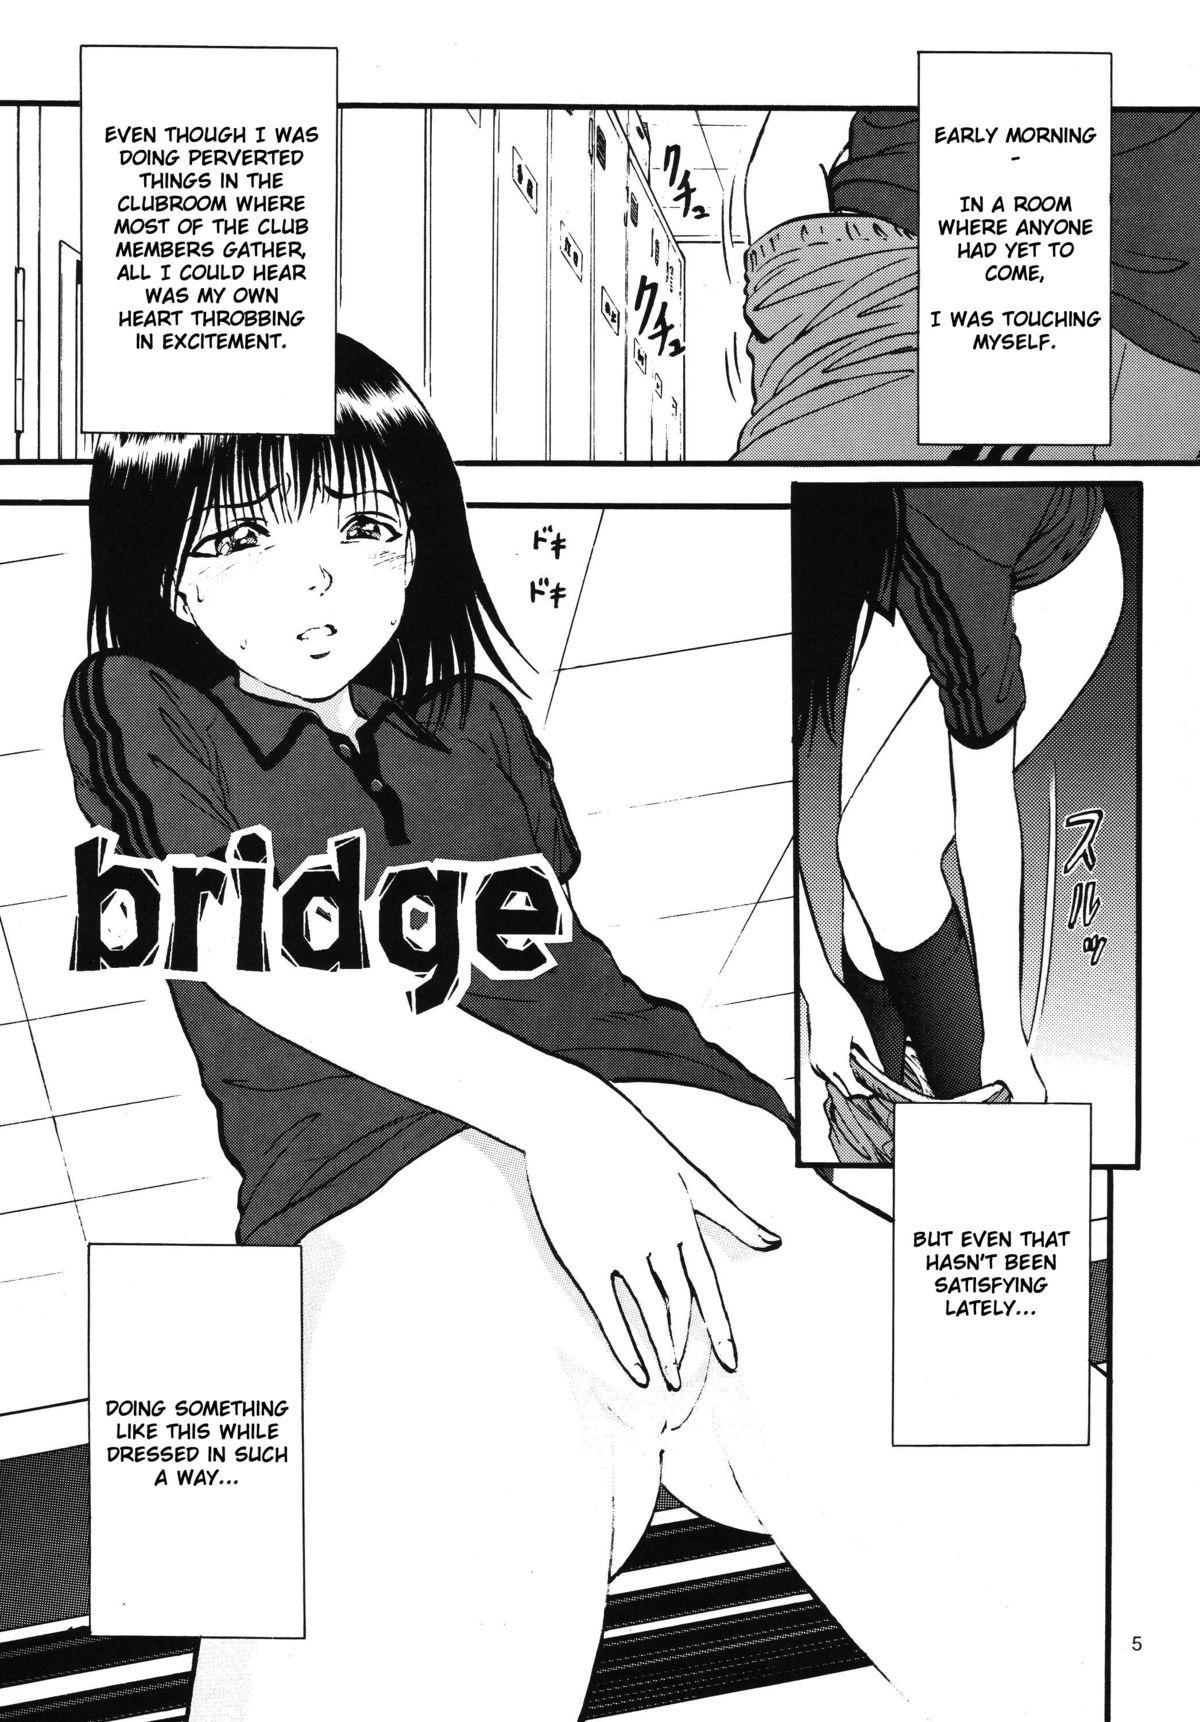 Morena Bridge Fucks - Page 5